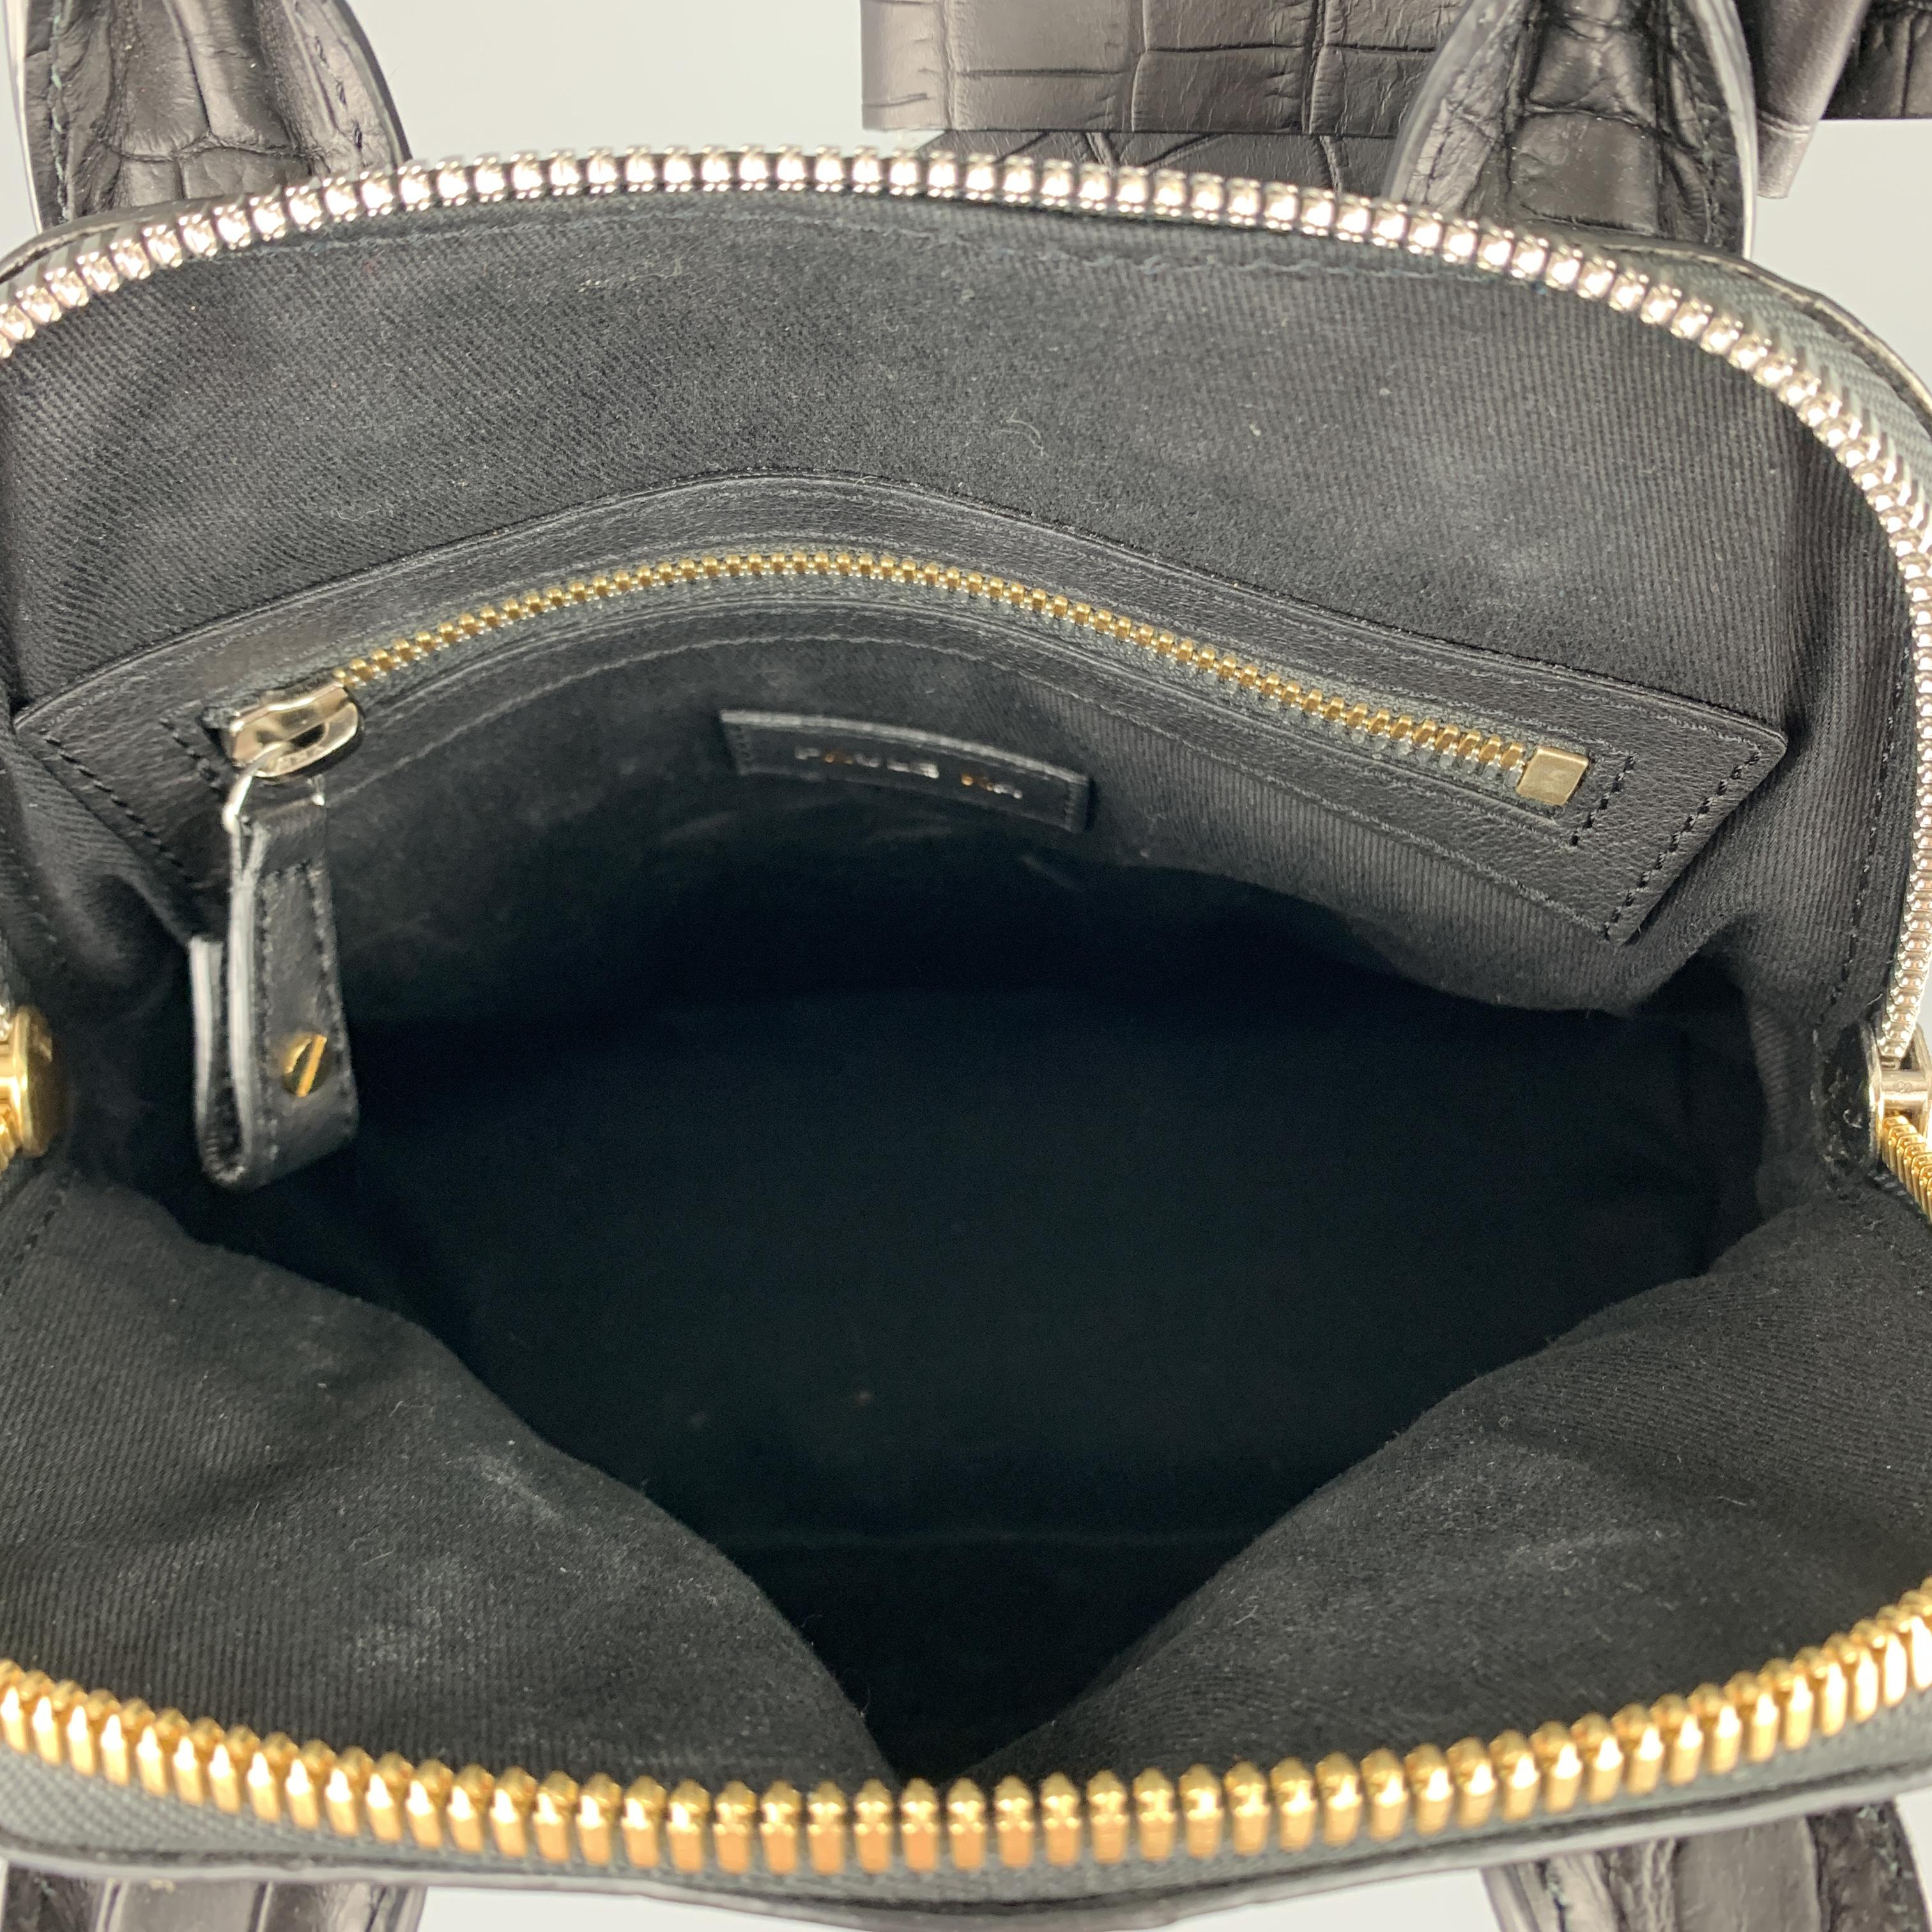 PAUL KA Black Crocodile Embossed Leather Mini Bow Handbag 2